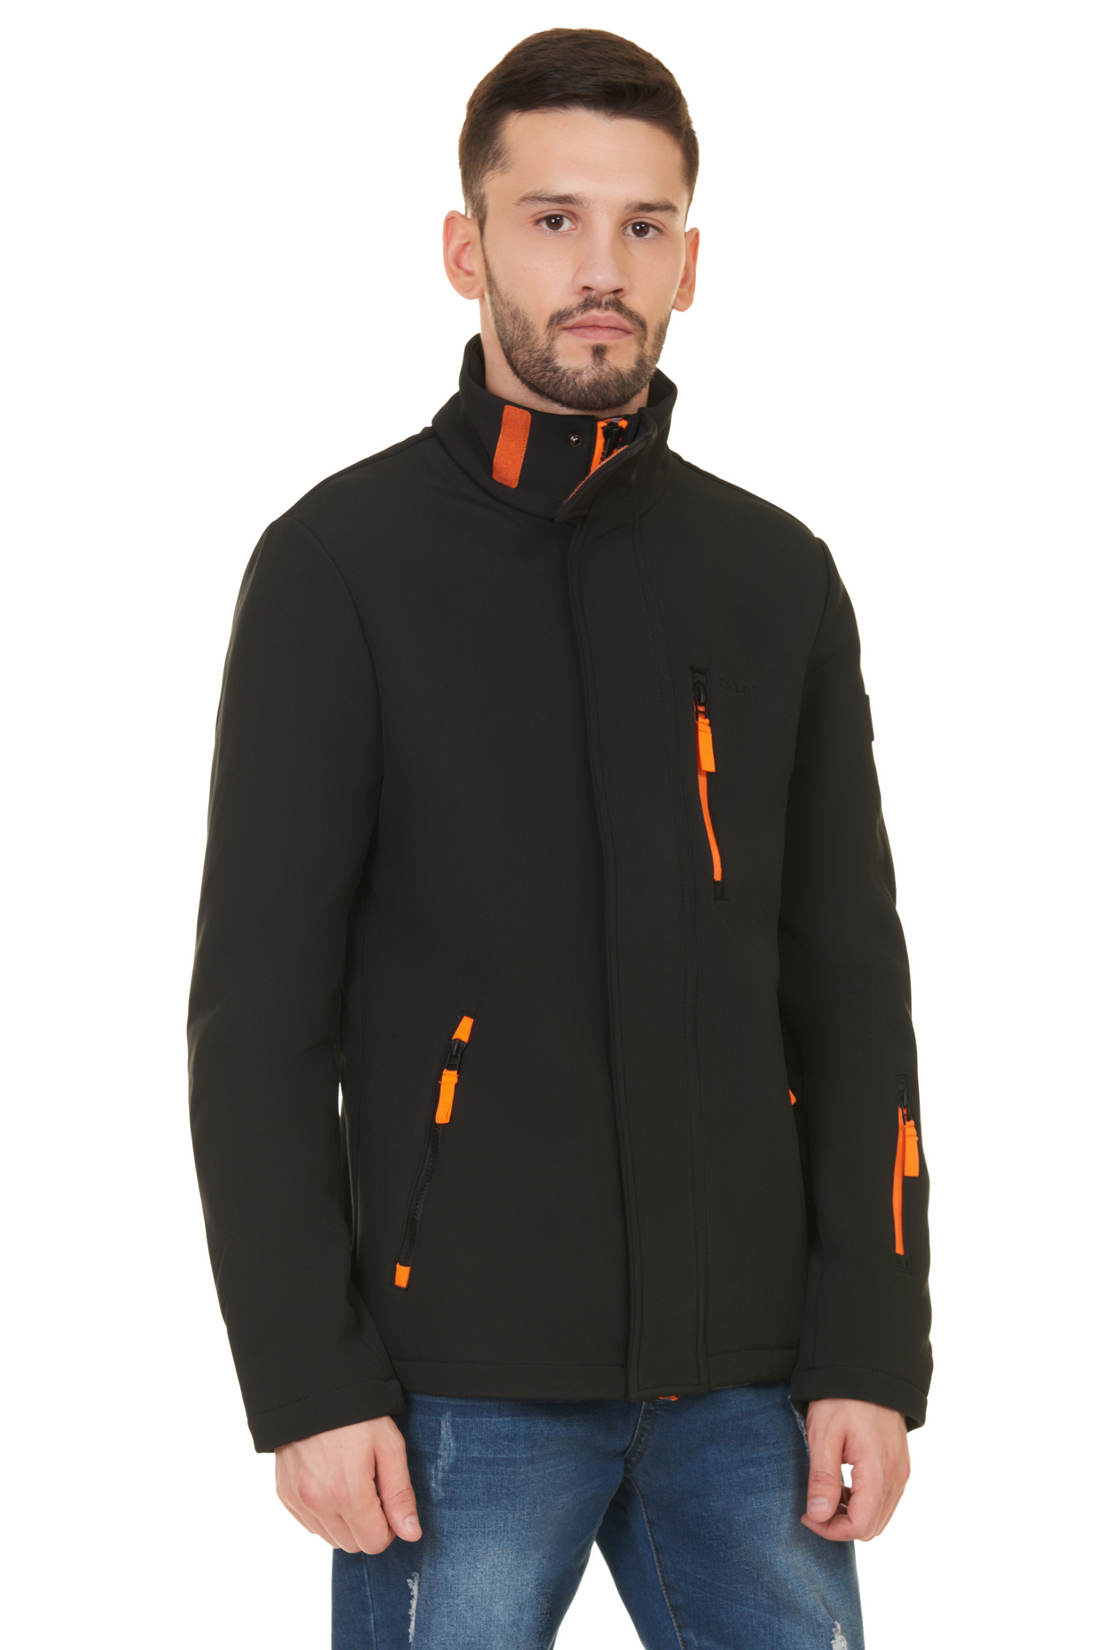 Куртка из виндблока (арт. baon B537504), размер M, цвет черный Куртка из виндблока (арт. baon B537504) - фото 1